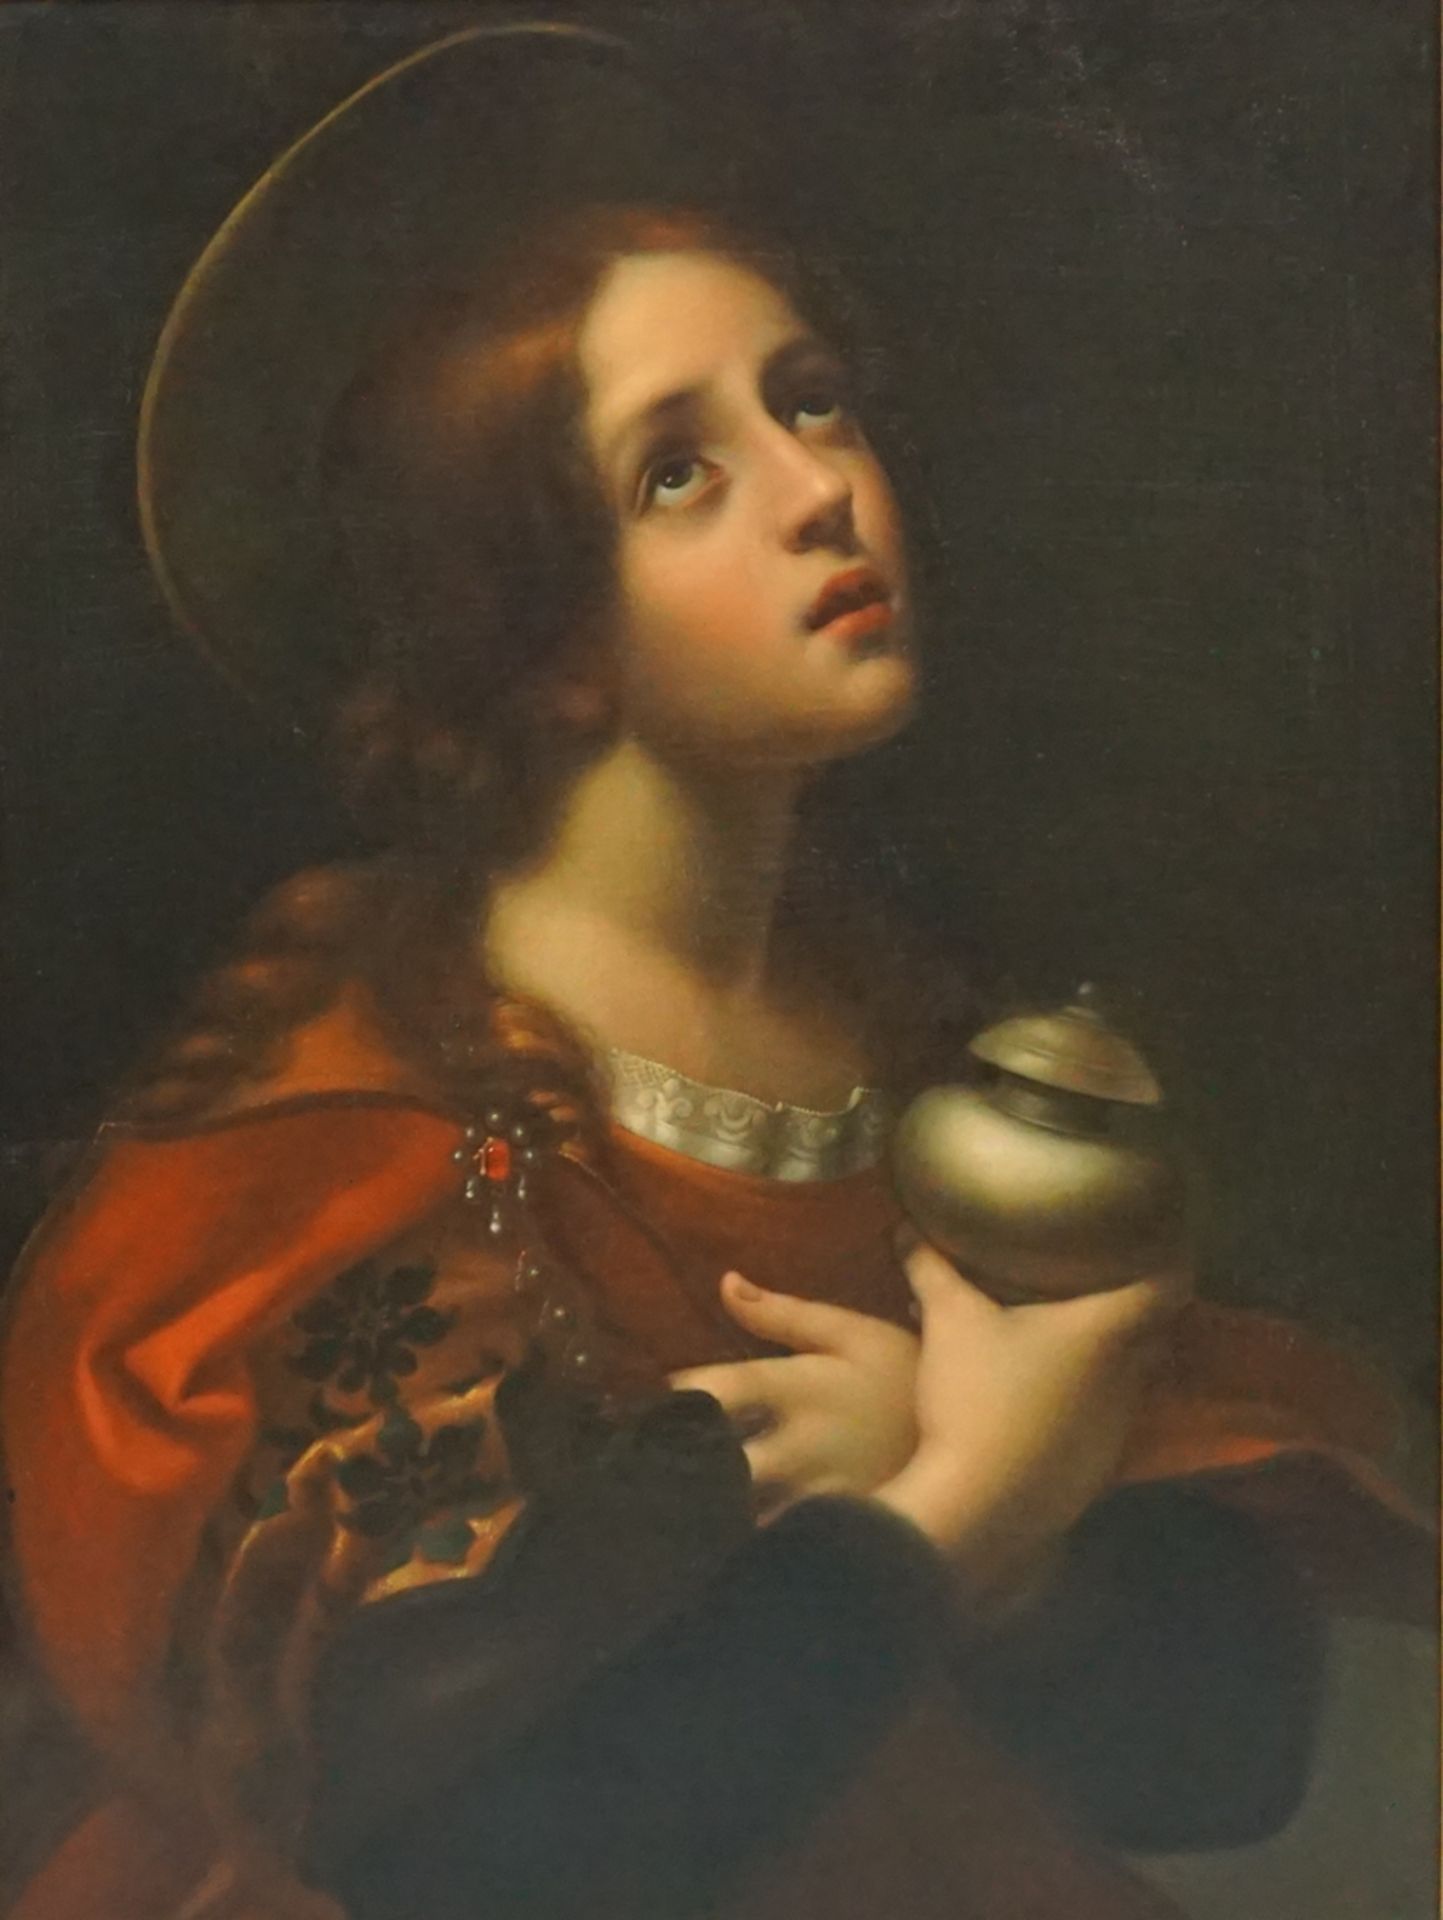 anonymer Kopist, "Die heilige Maria Magdalena", nach Carlo Dolci, um 1900, Öl/Lwd. - Bild 2 aus 4